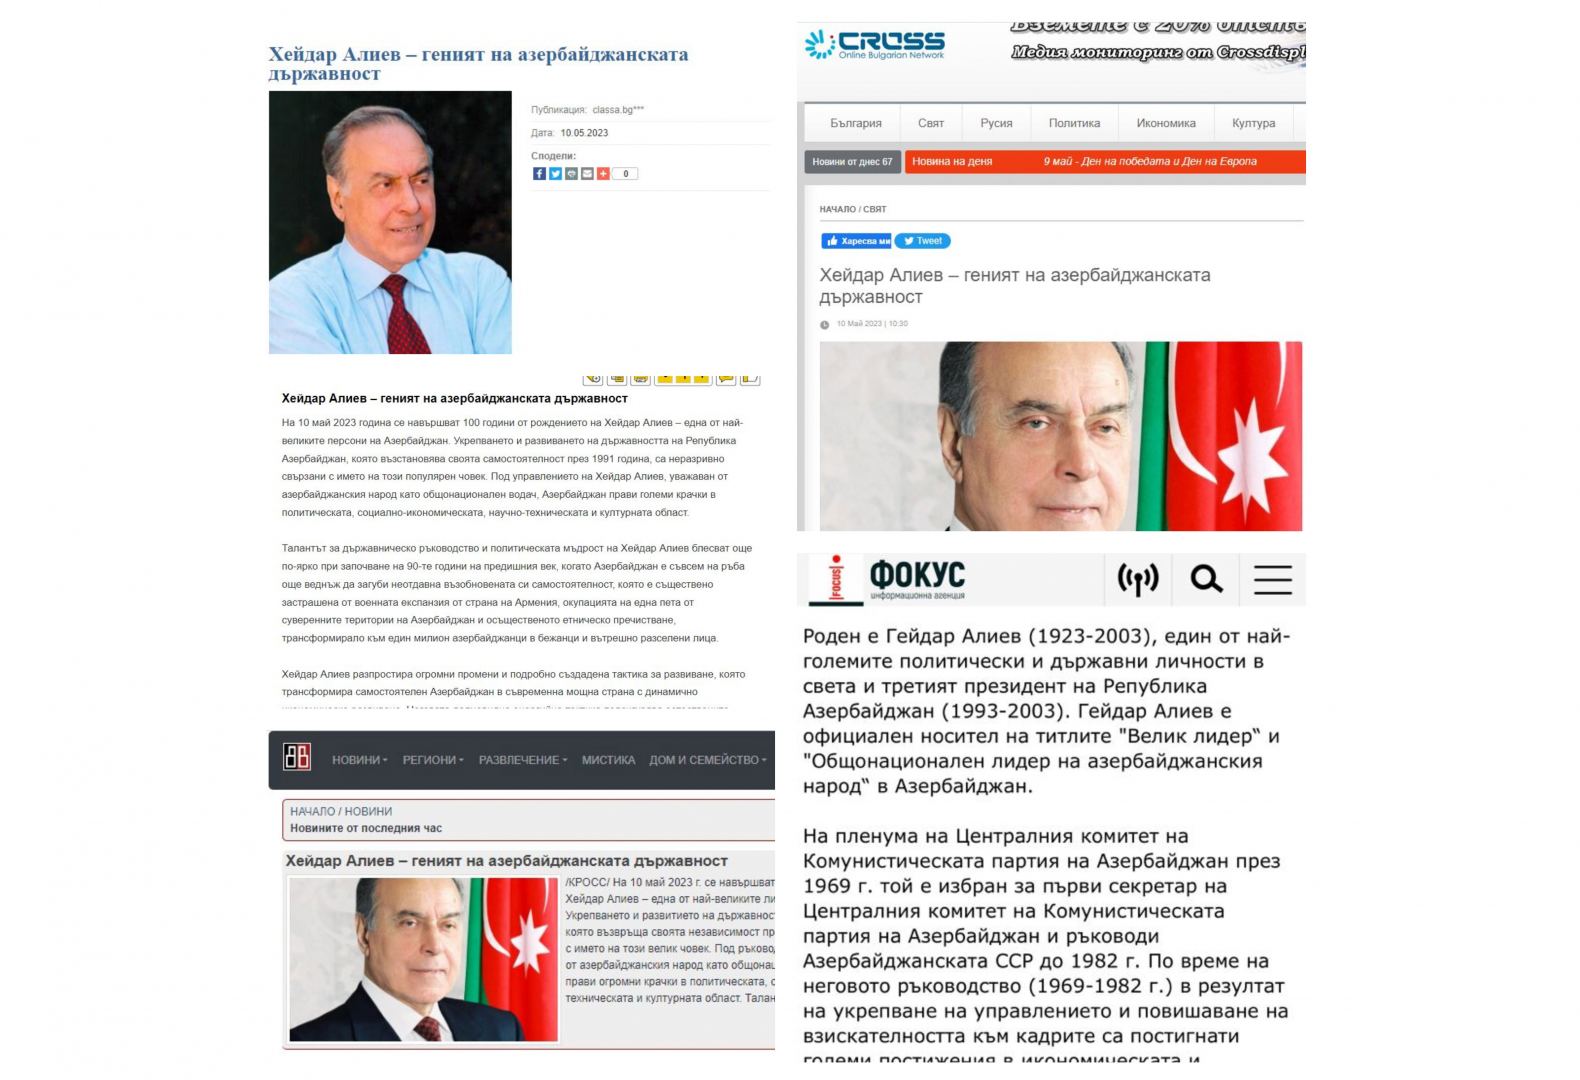 100-летие общенационального лидера Гейдара Алиева широко освещено в болгарской прессе